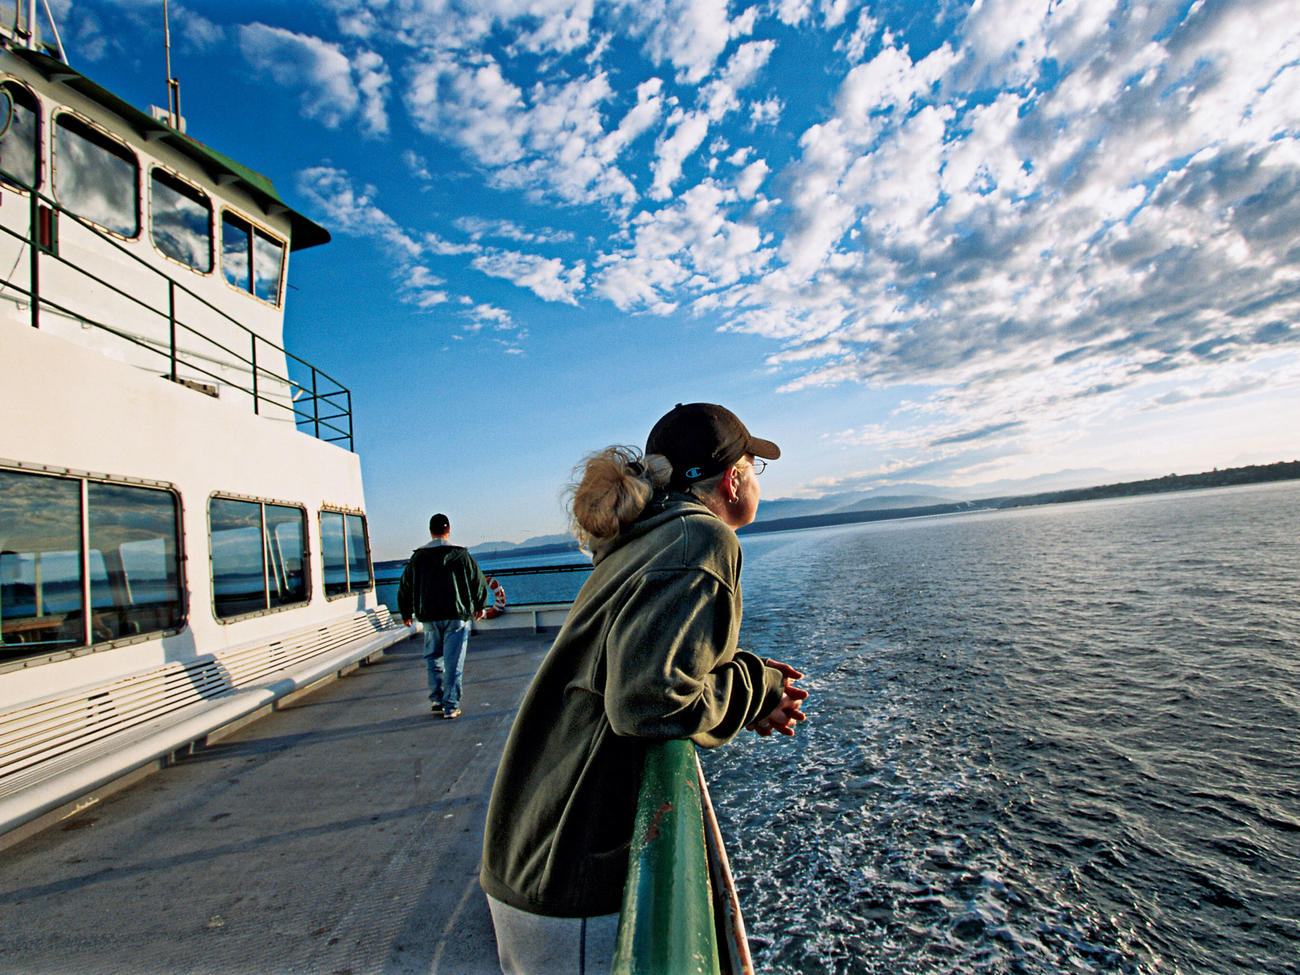 The Northwest’s Five Best Ferry Rides